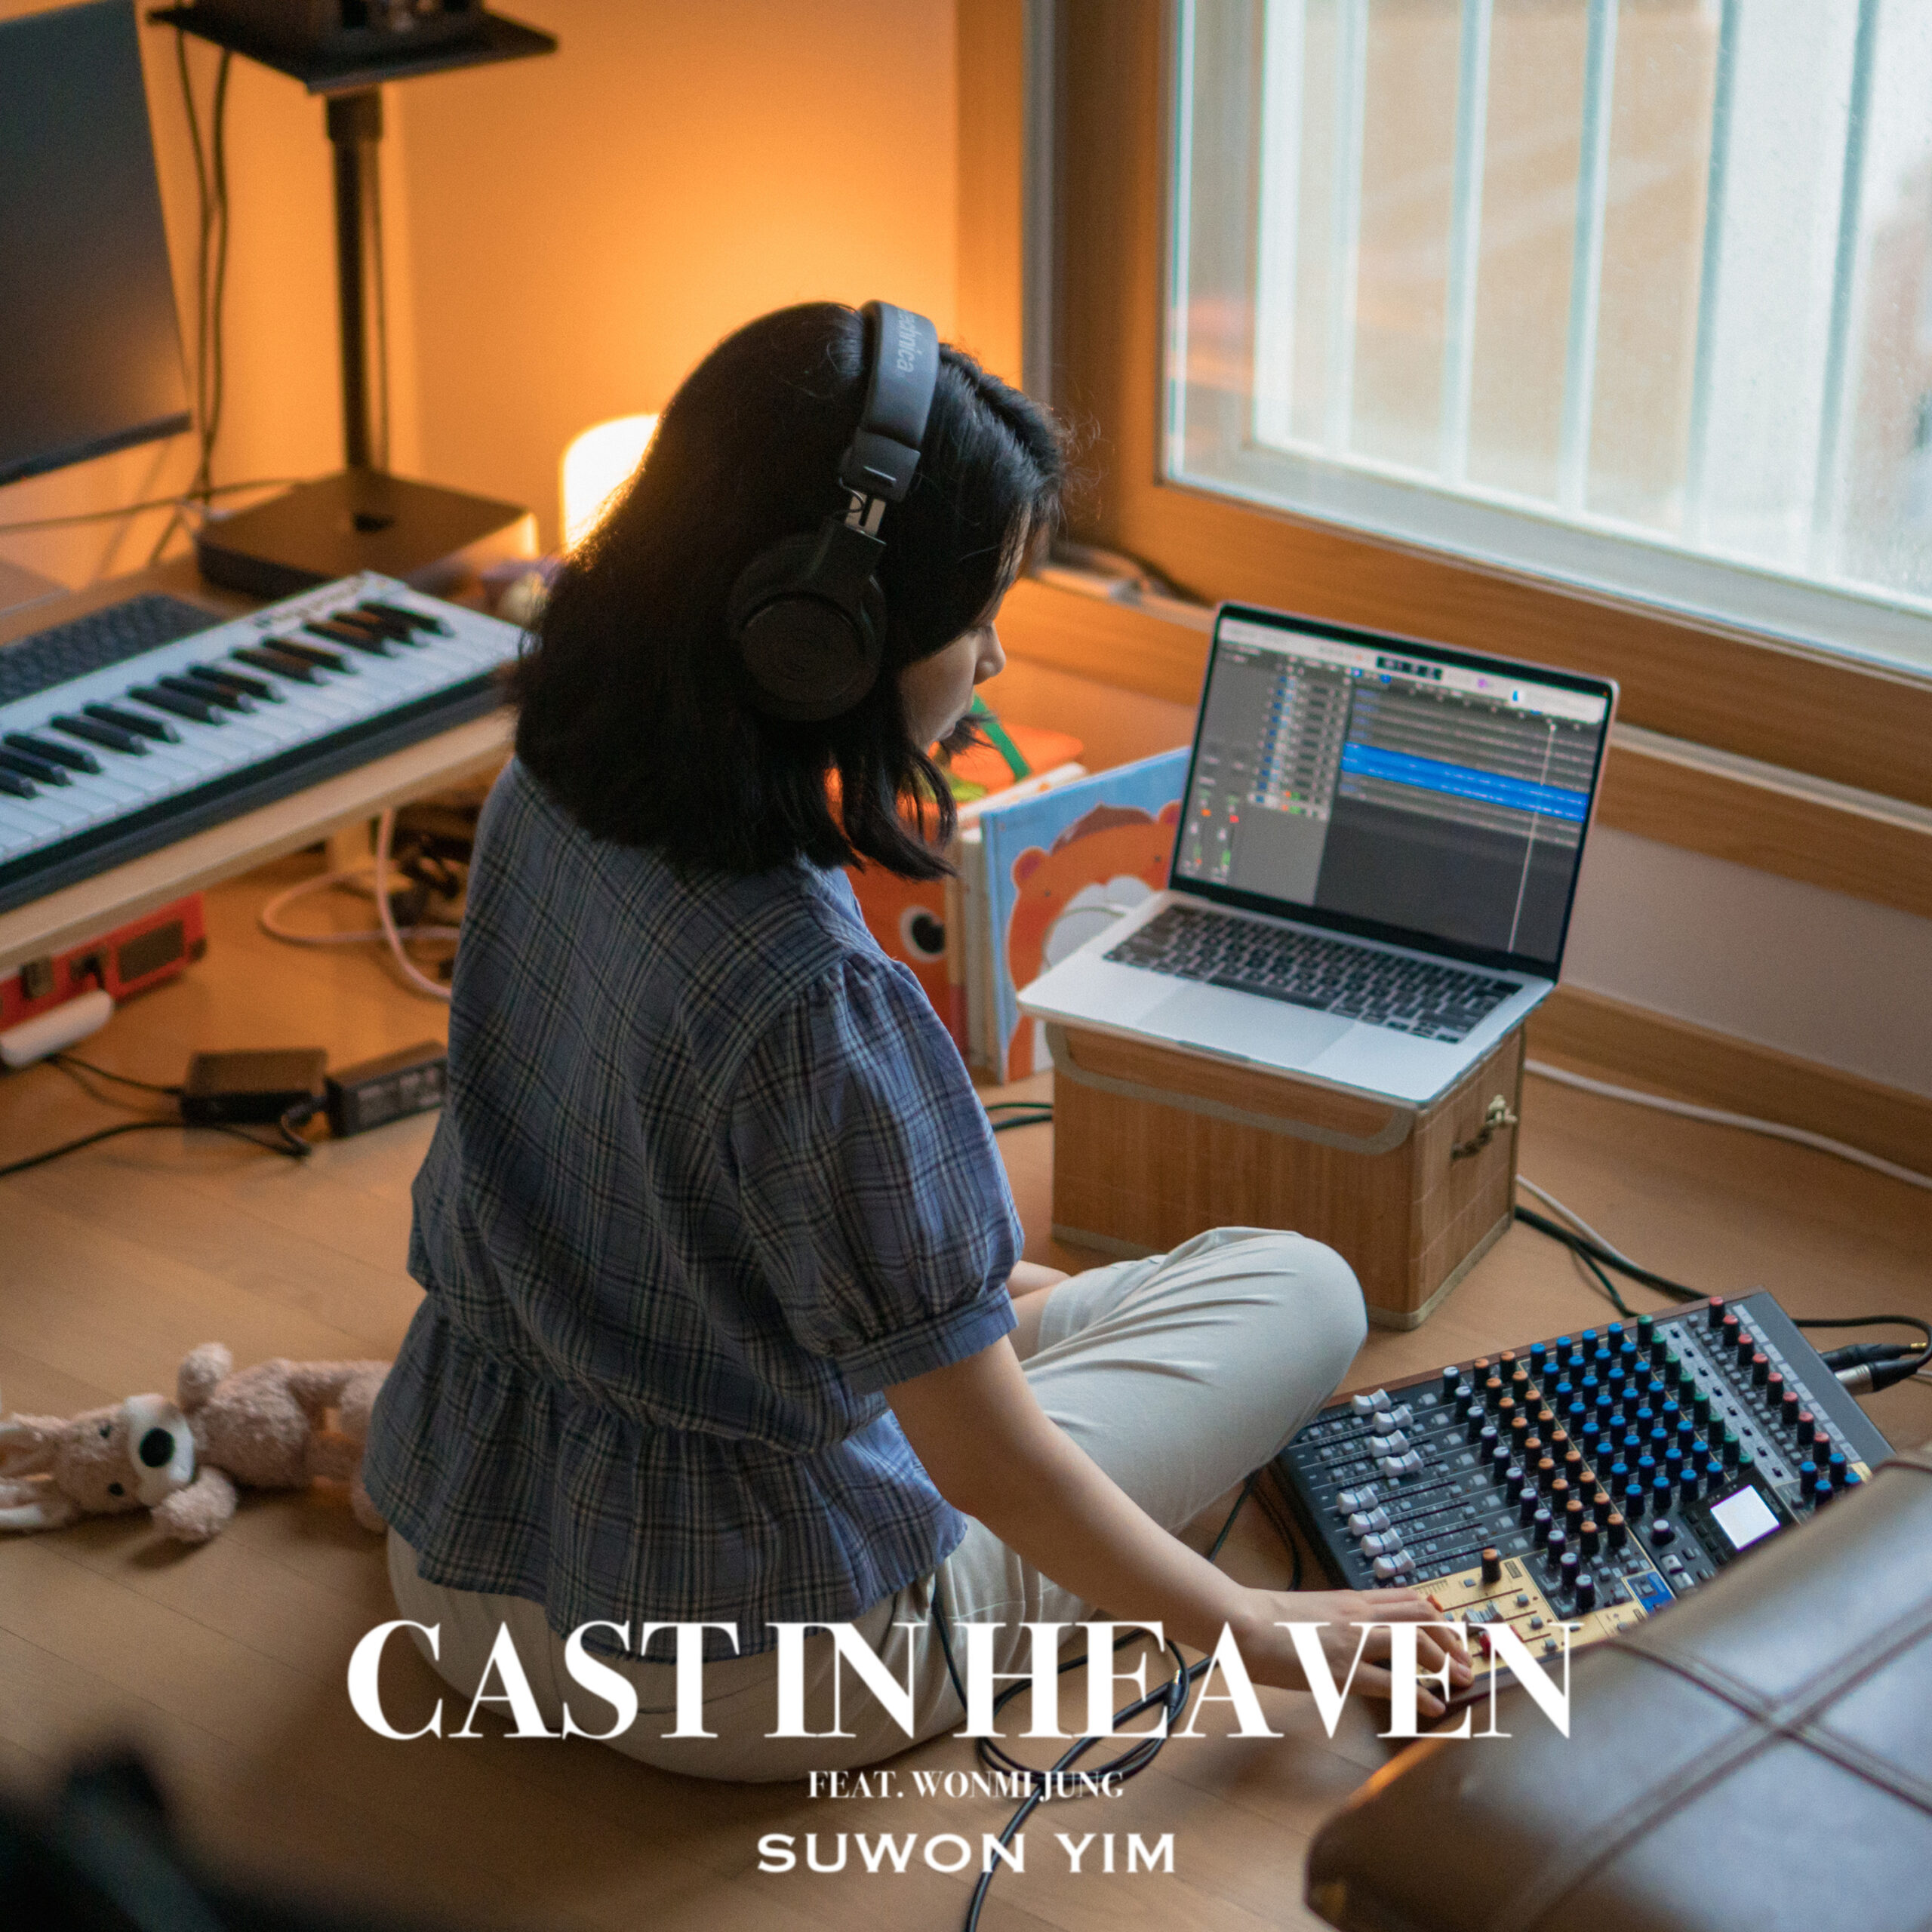 Cast In Heaven (feat. Wonmi Jung)